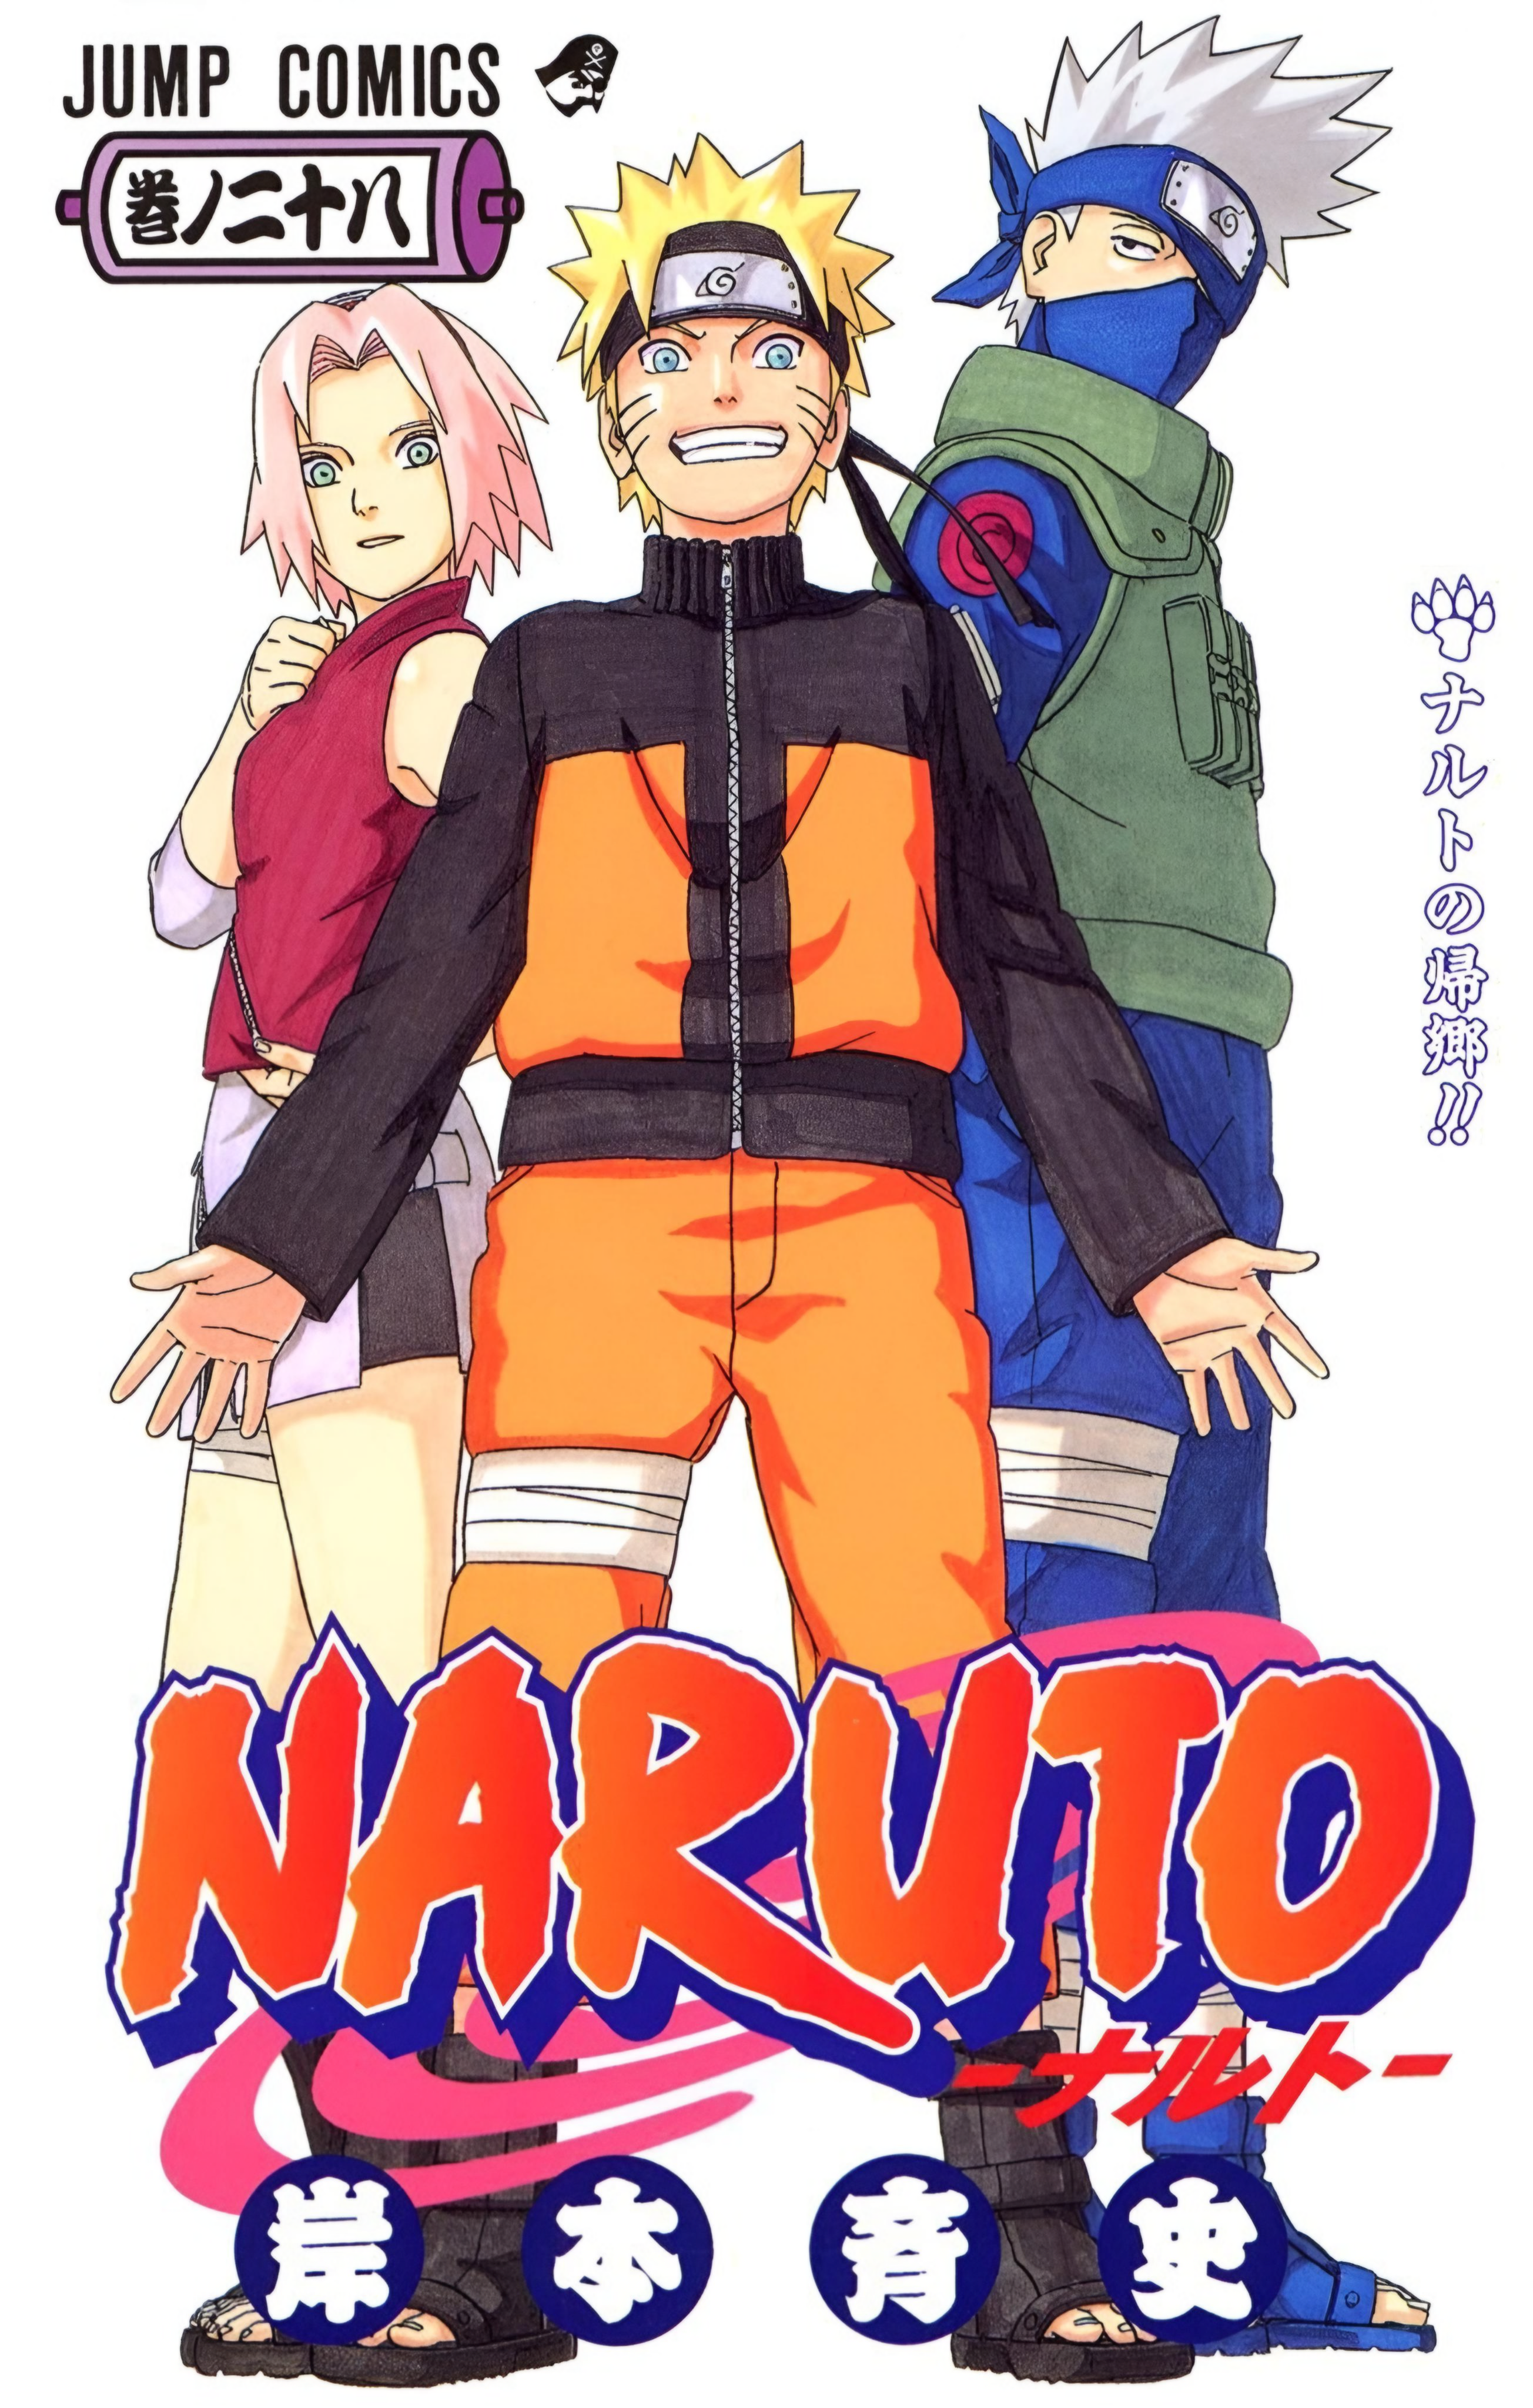 Cena de Naruto Clássico representando o trabalho em equipe Fonte